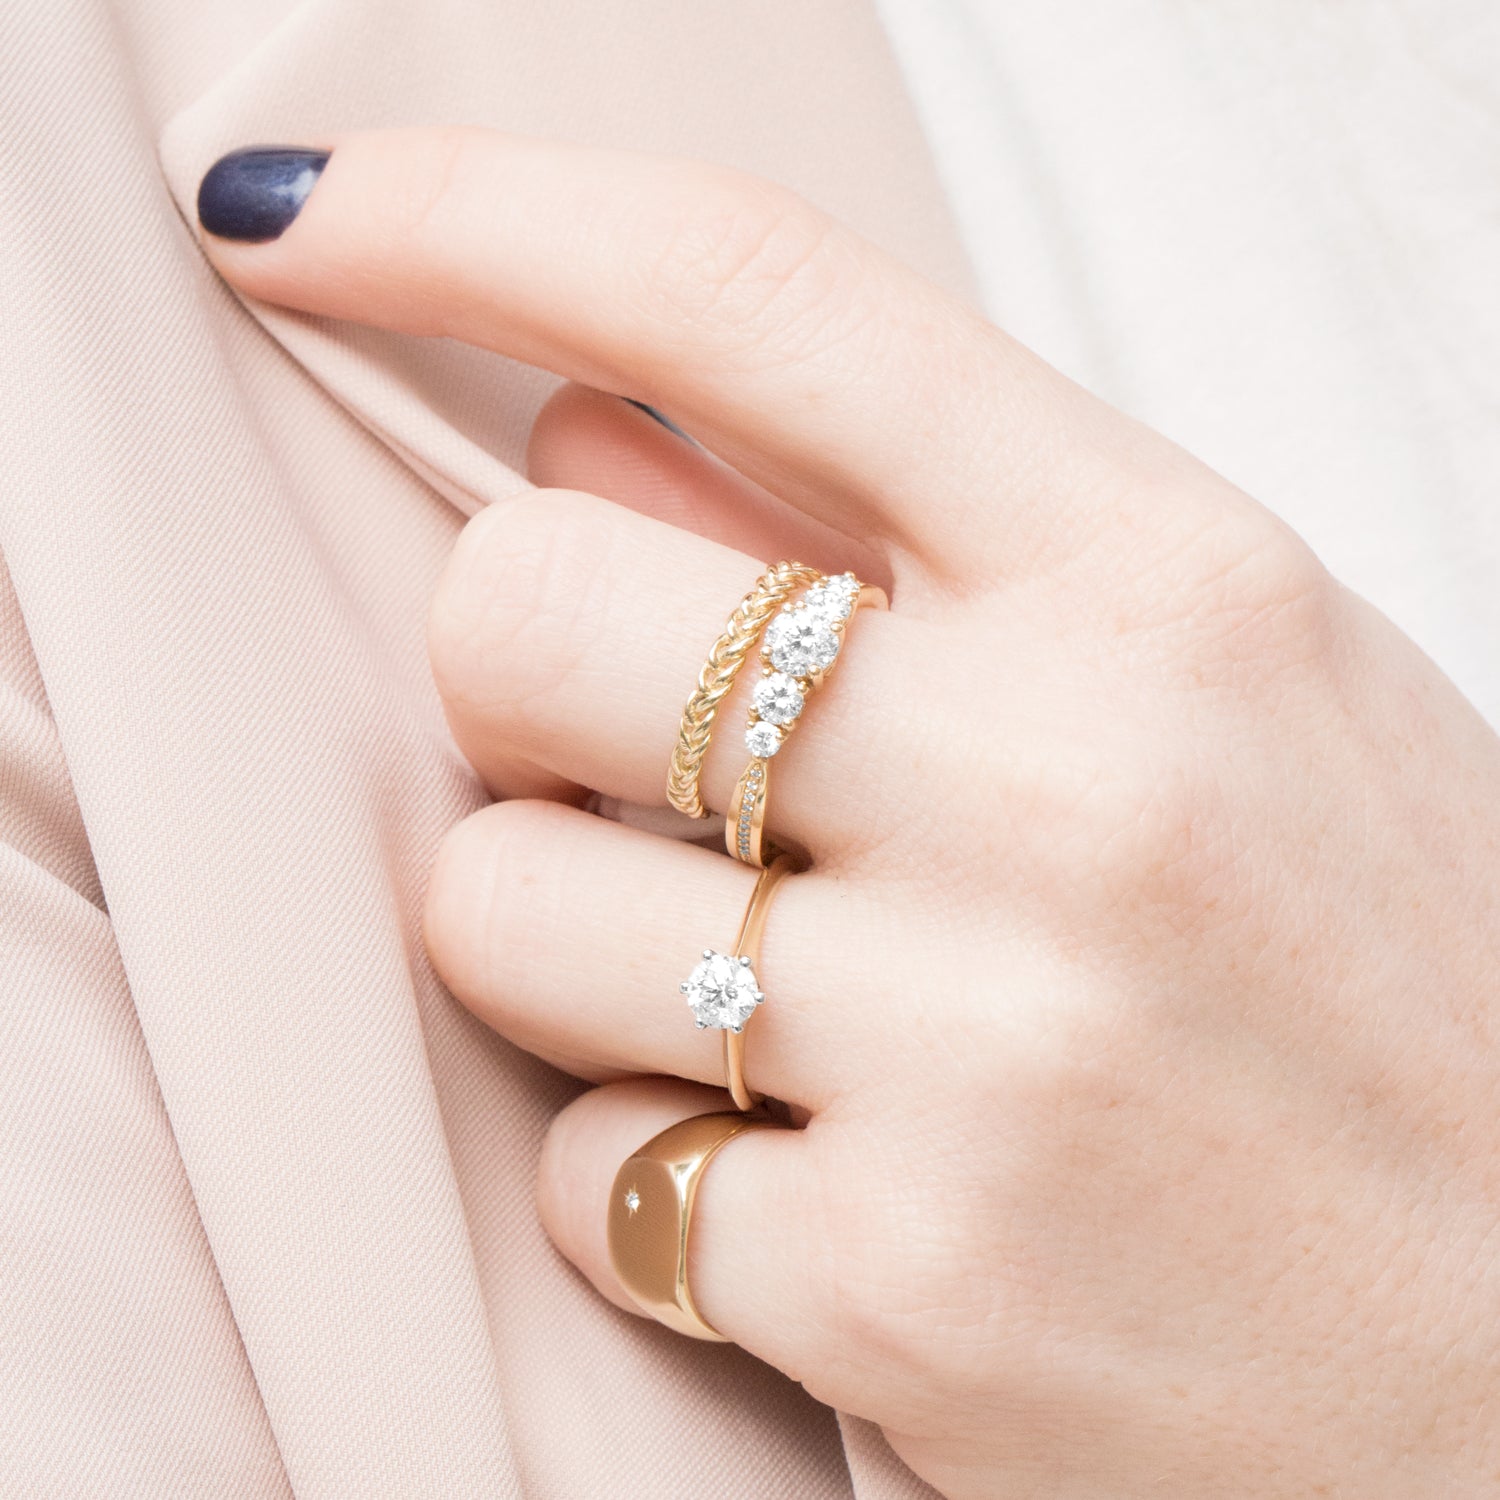 Maria Gold Ring White Diamond & Engraving